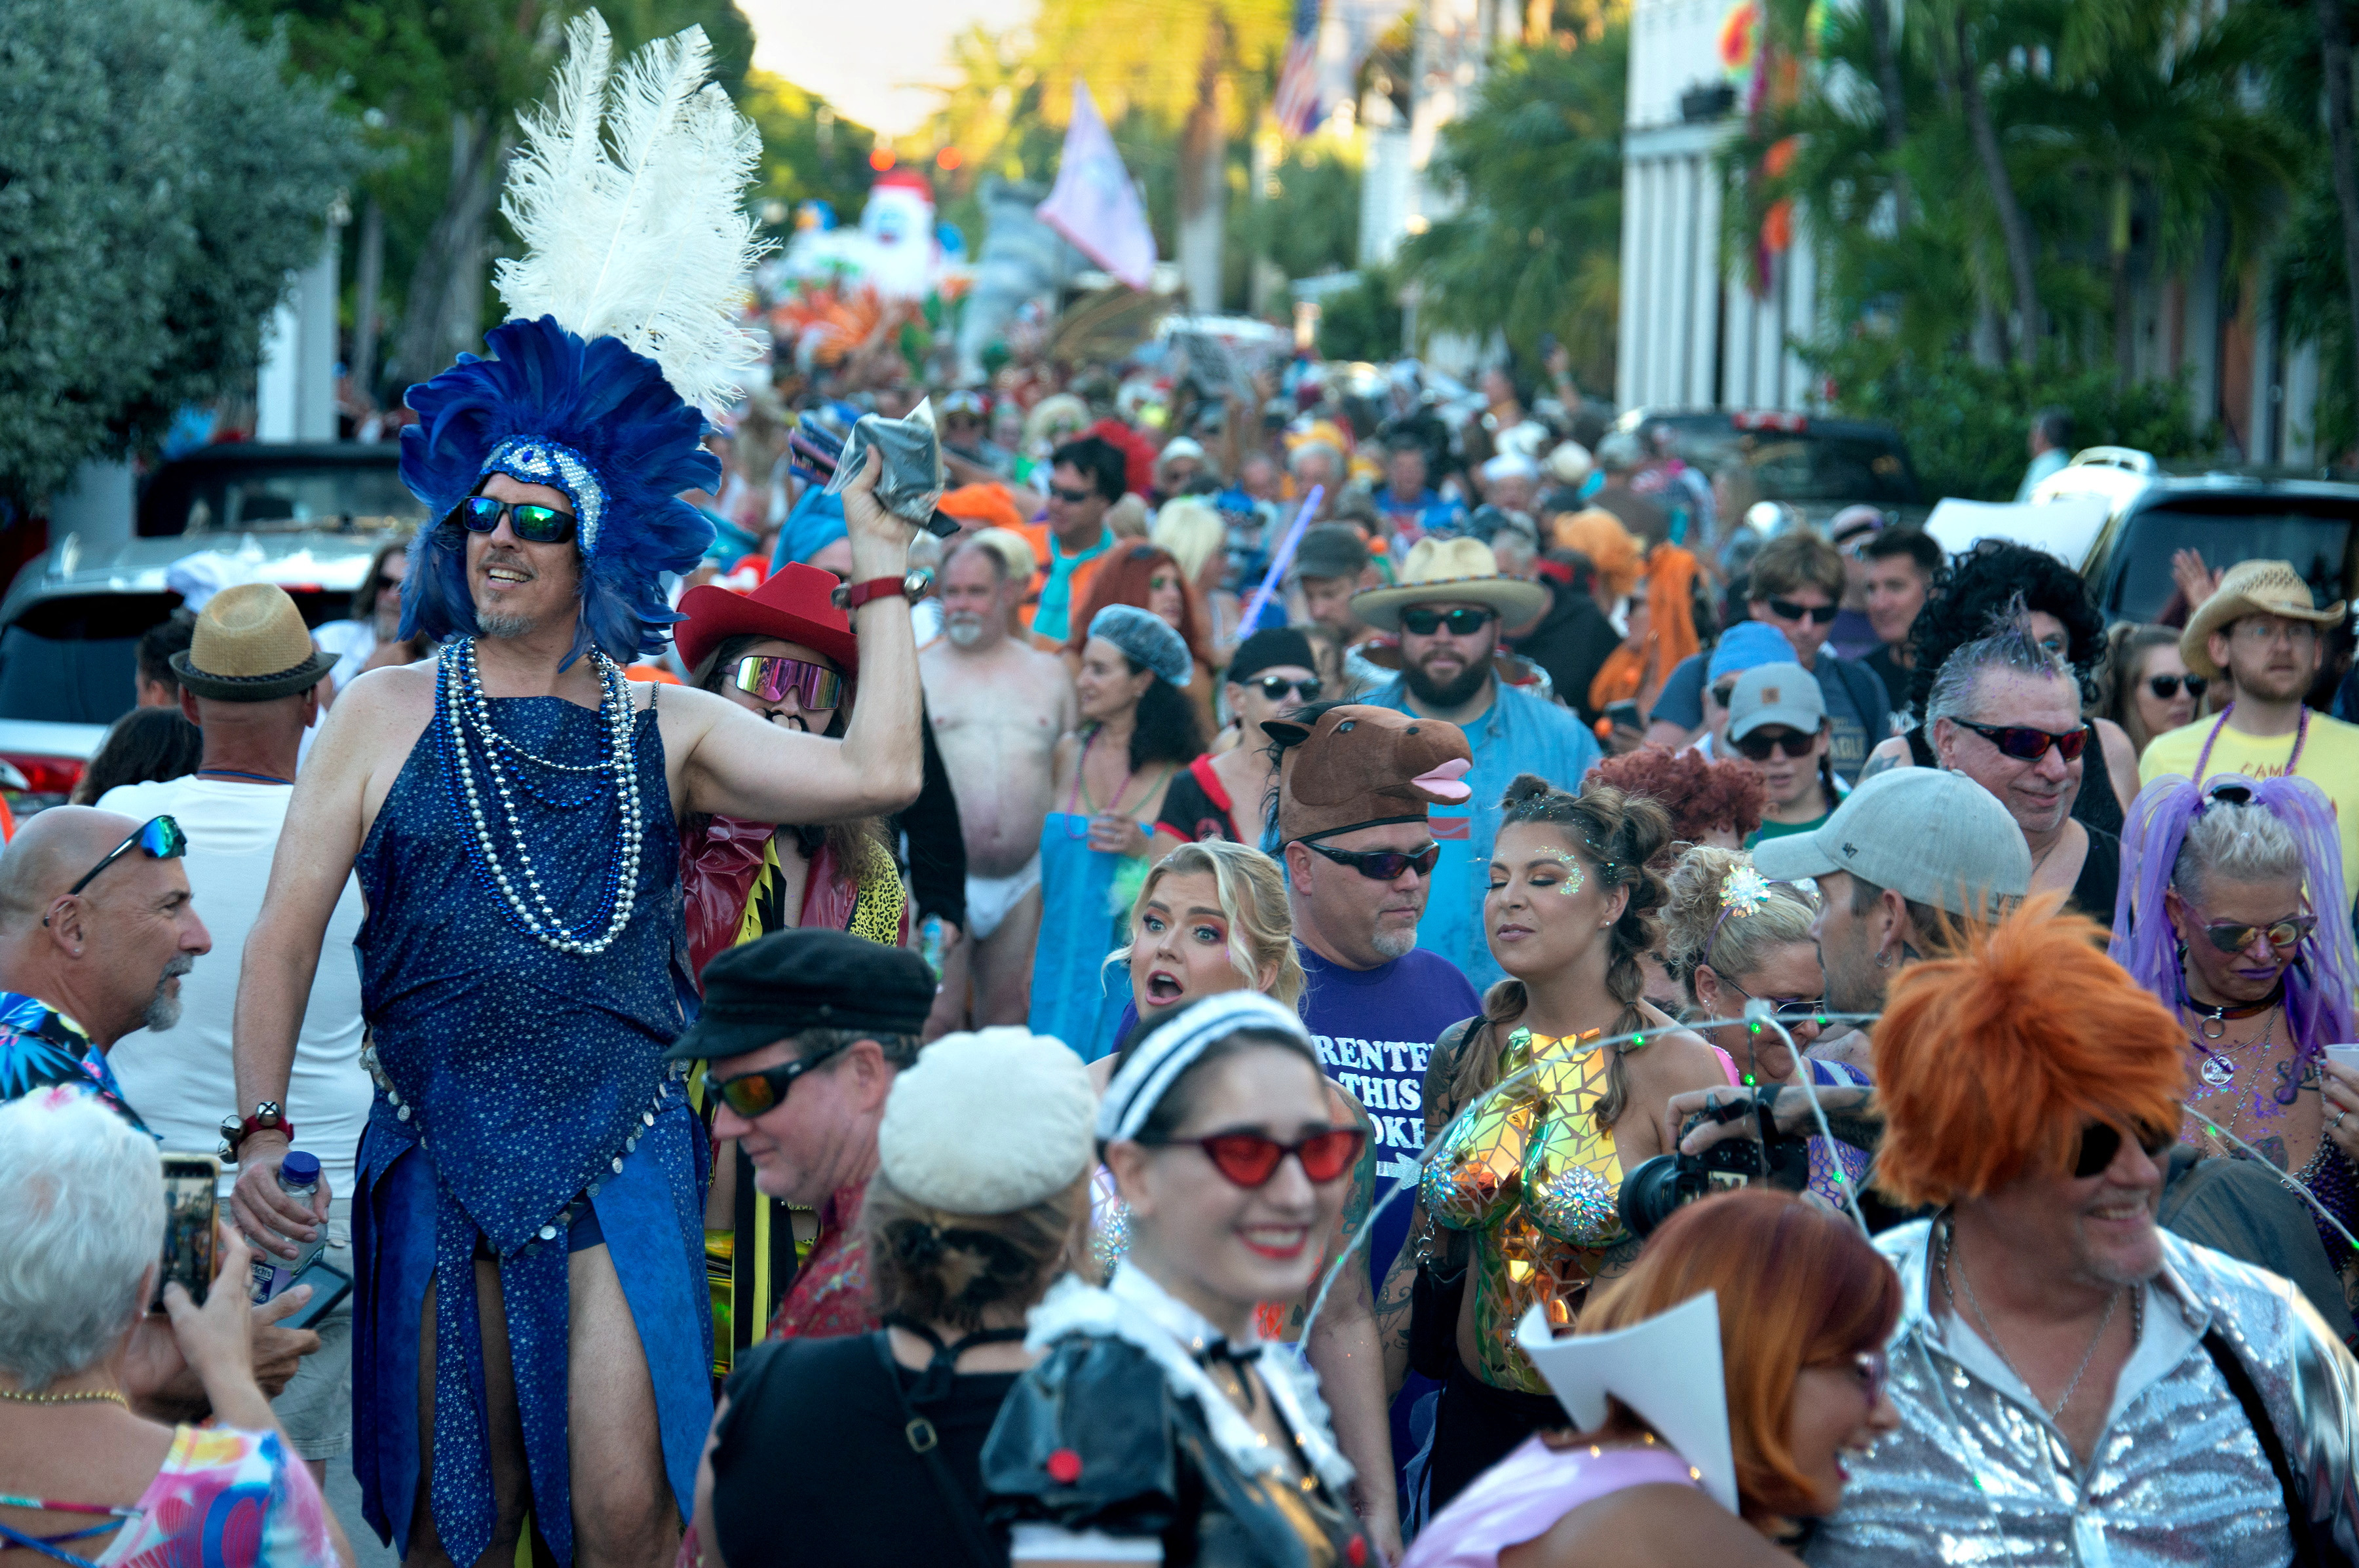 La última semana de octubre, Key West se llena de gente y colores para celebrar Fantasy Fest. (Andy Newman/Florida Keys News Bureau/Handout via REUTERS)